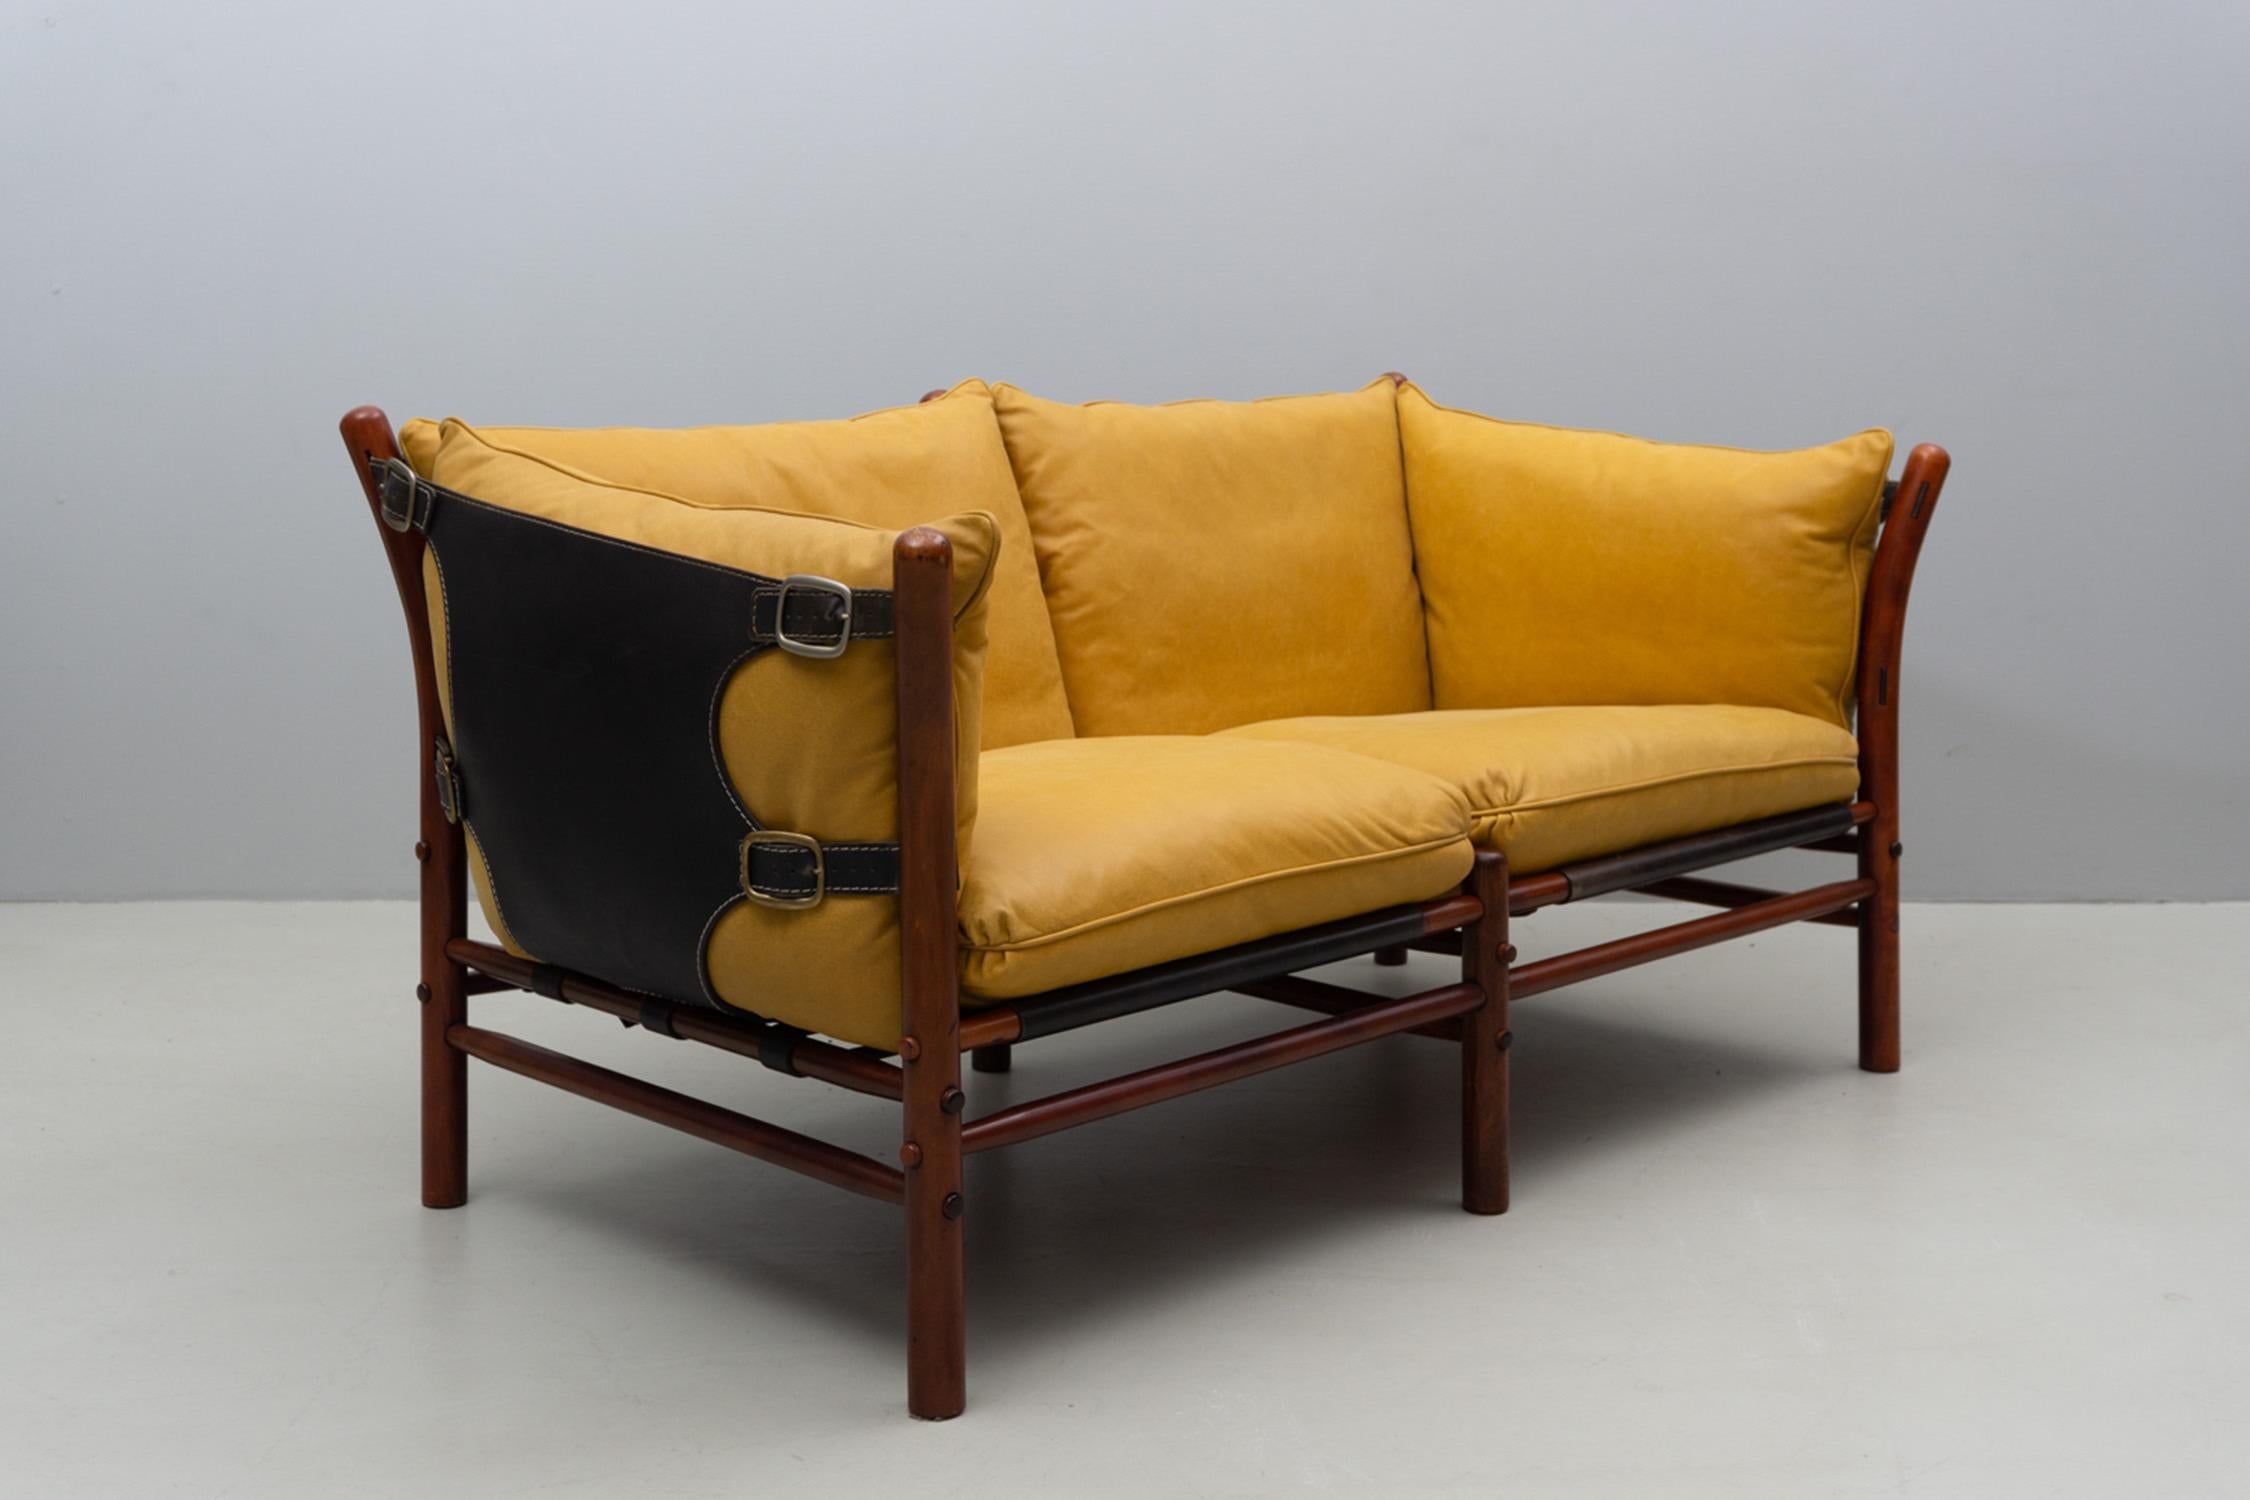 Canapé 'Illona' pour deux personnes en cuir de buffle de couleur moutarde avec une structure en bois de bouleau. Une couverture et des descentes renouvelées. 

Arne Norell (1917-1971) était un designer de meubles et un entrepreneur suédois. Il a